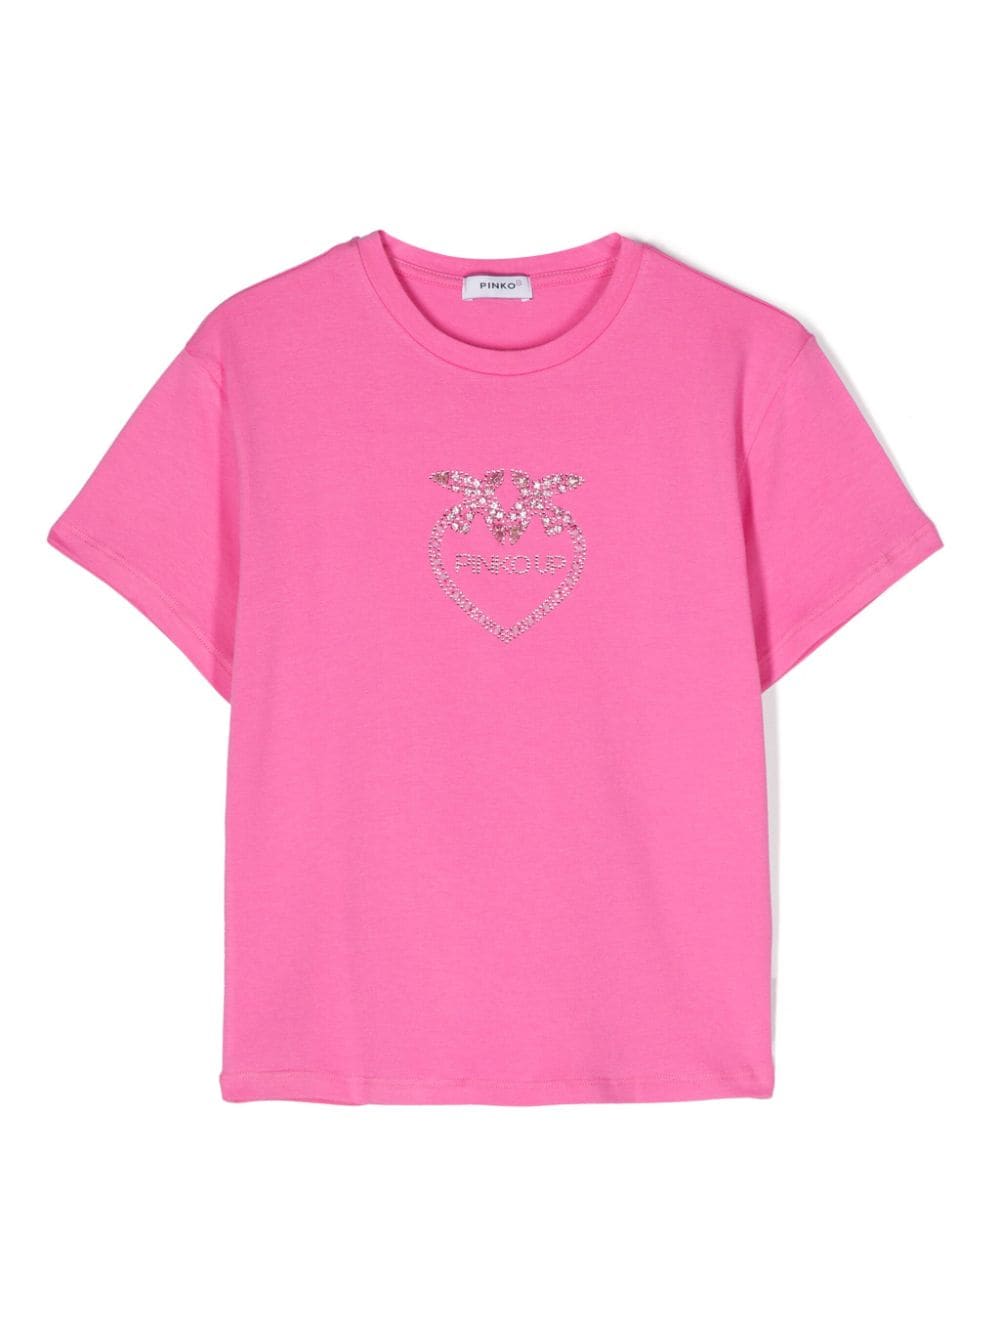 Pinko Kids crystal-embellished logo T-shirt von Pinko Kids